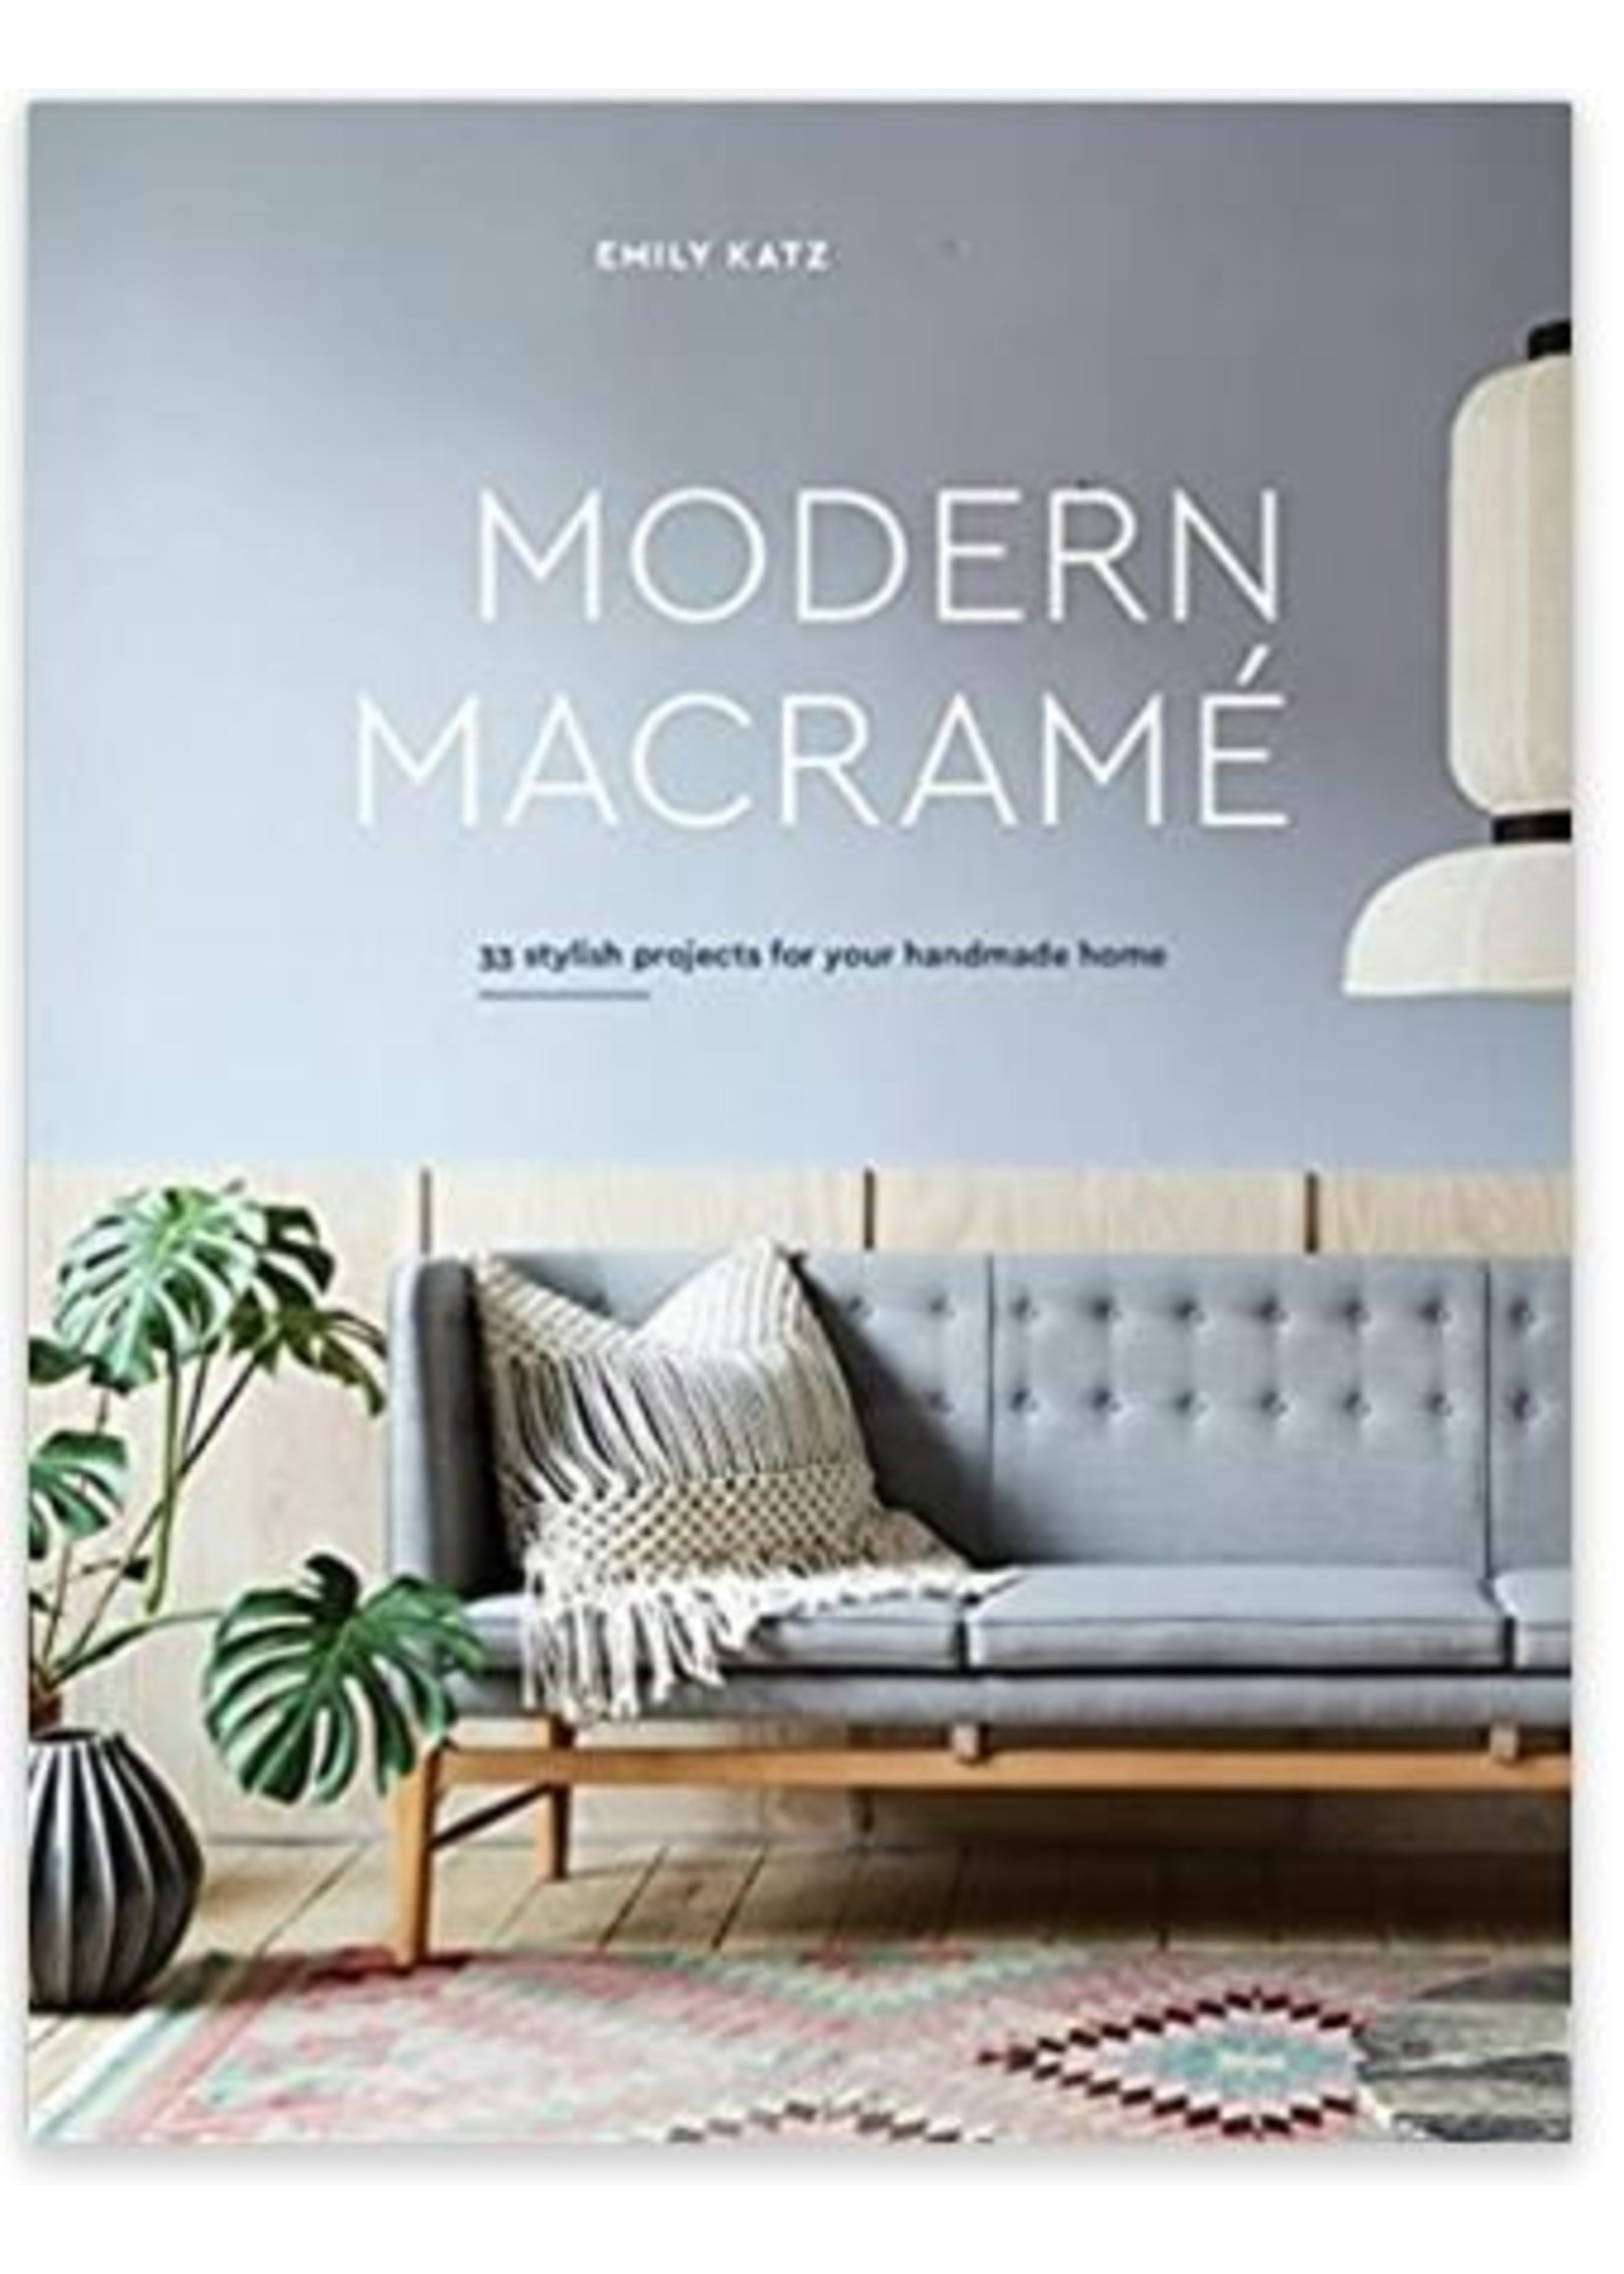 Modern Macrame book